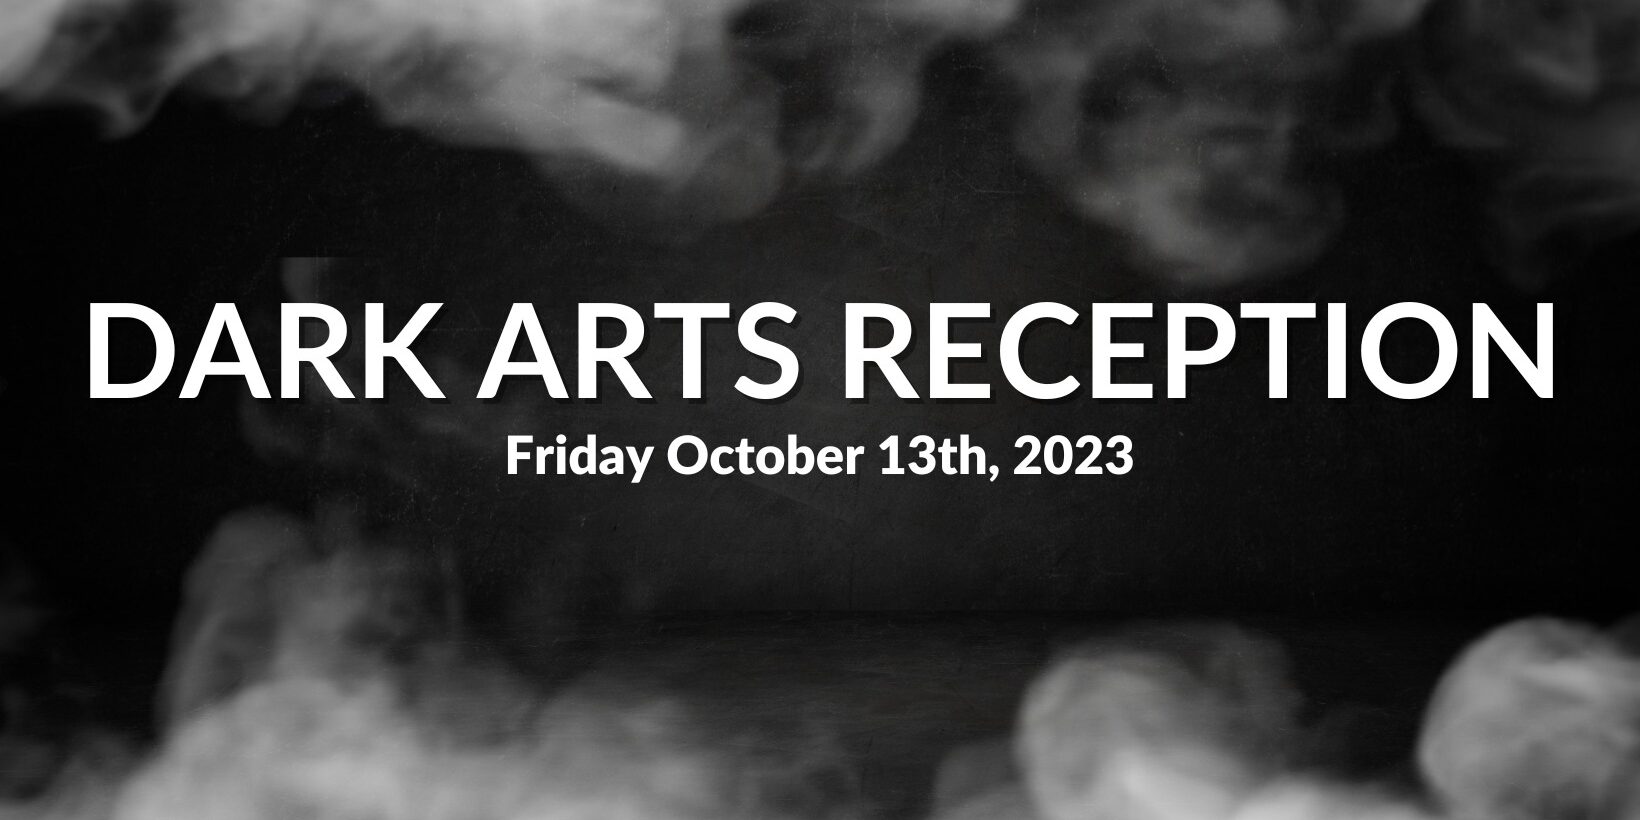 Dark Arts Reception, Friday, October 13th, 2023 at Thomas Dunn Learning Center.